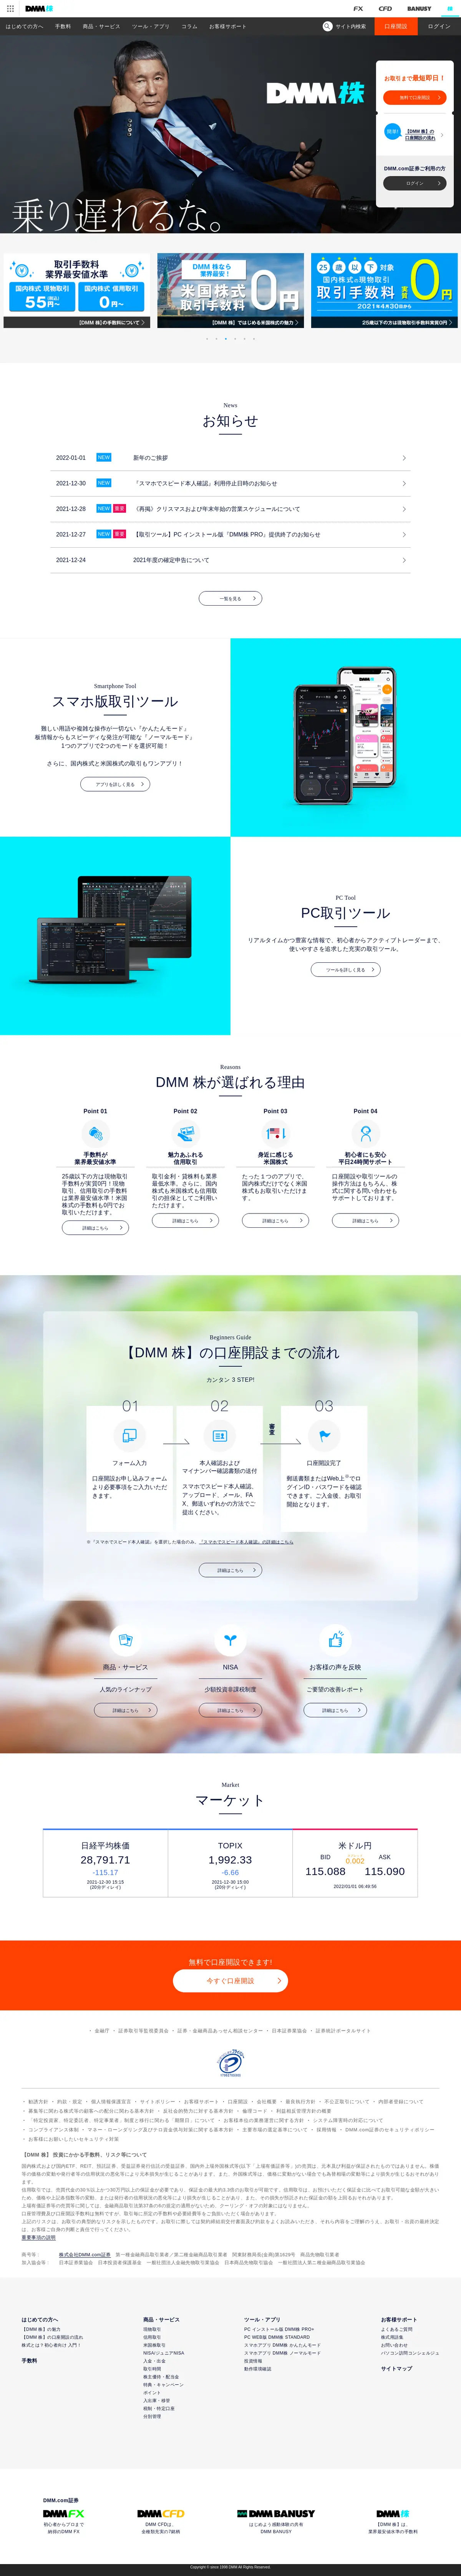 キャプチャ画面 会社名:DMM.com Groupプロジェクト名:DMM 株 画面名:全国トップ デバイス名:PCカテゴリ:金融・保険タグ:全国トップ,PC